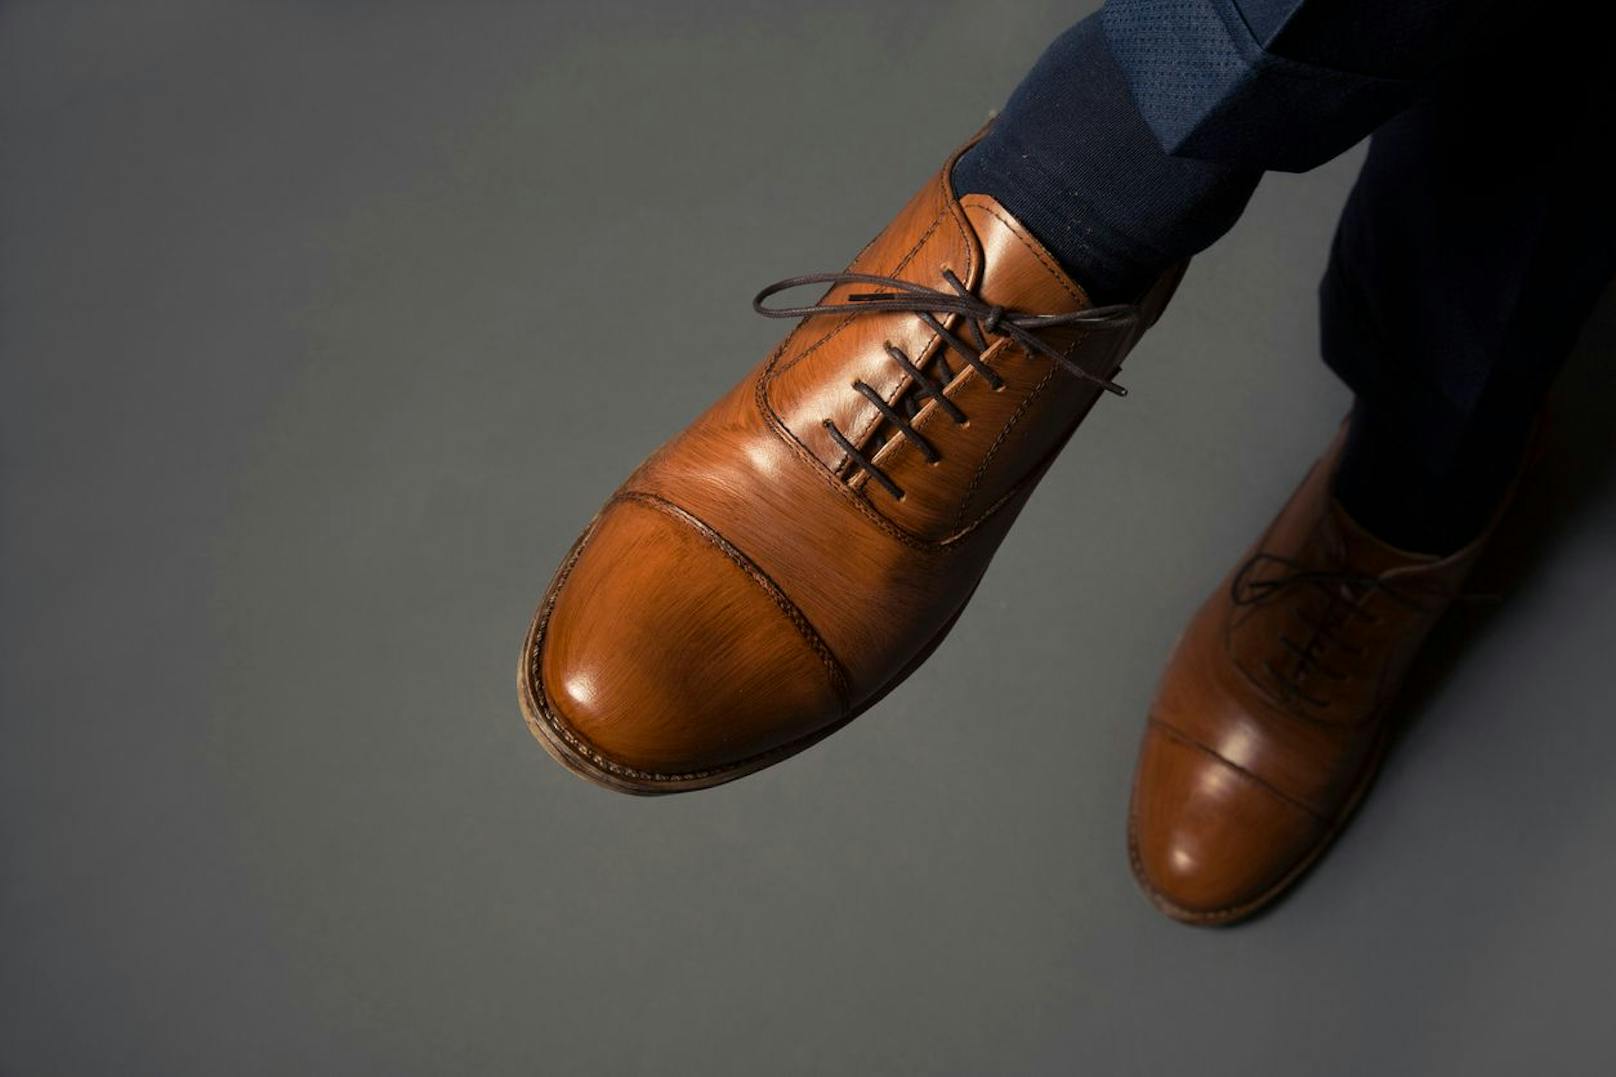 Je größer der Schuh, desto... treuer? oder untreuer? Eine britische Umfrage sieht da einen Zusammenhang.